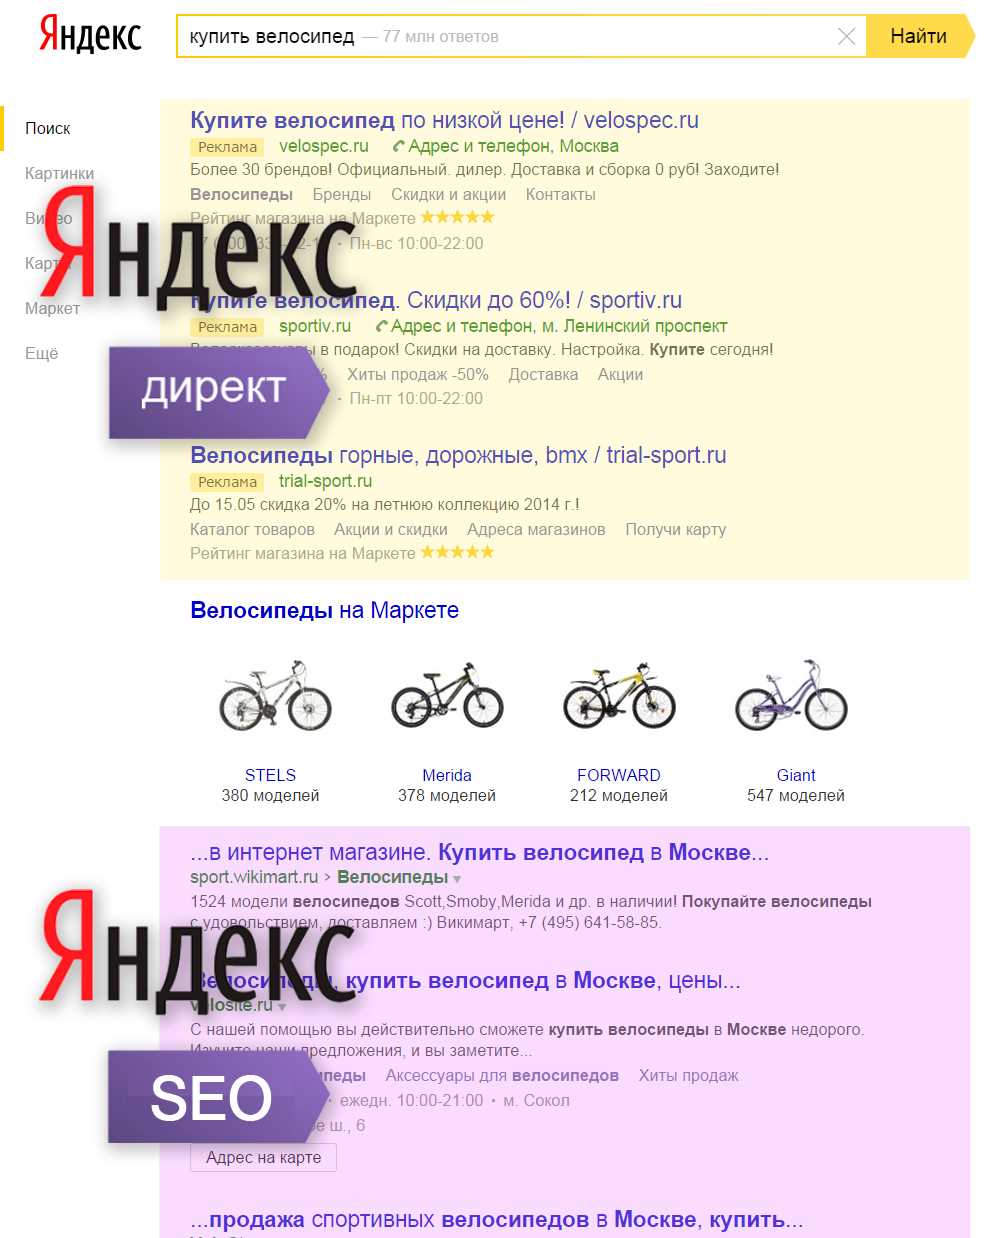 Правильная реклама сайта в Яндексе